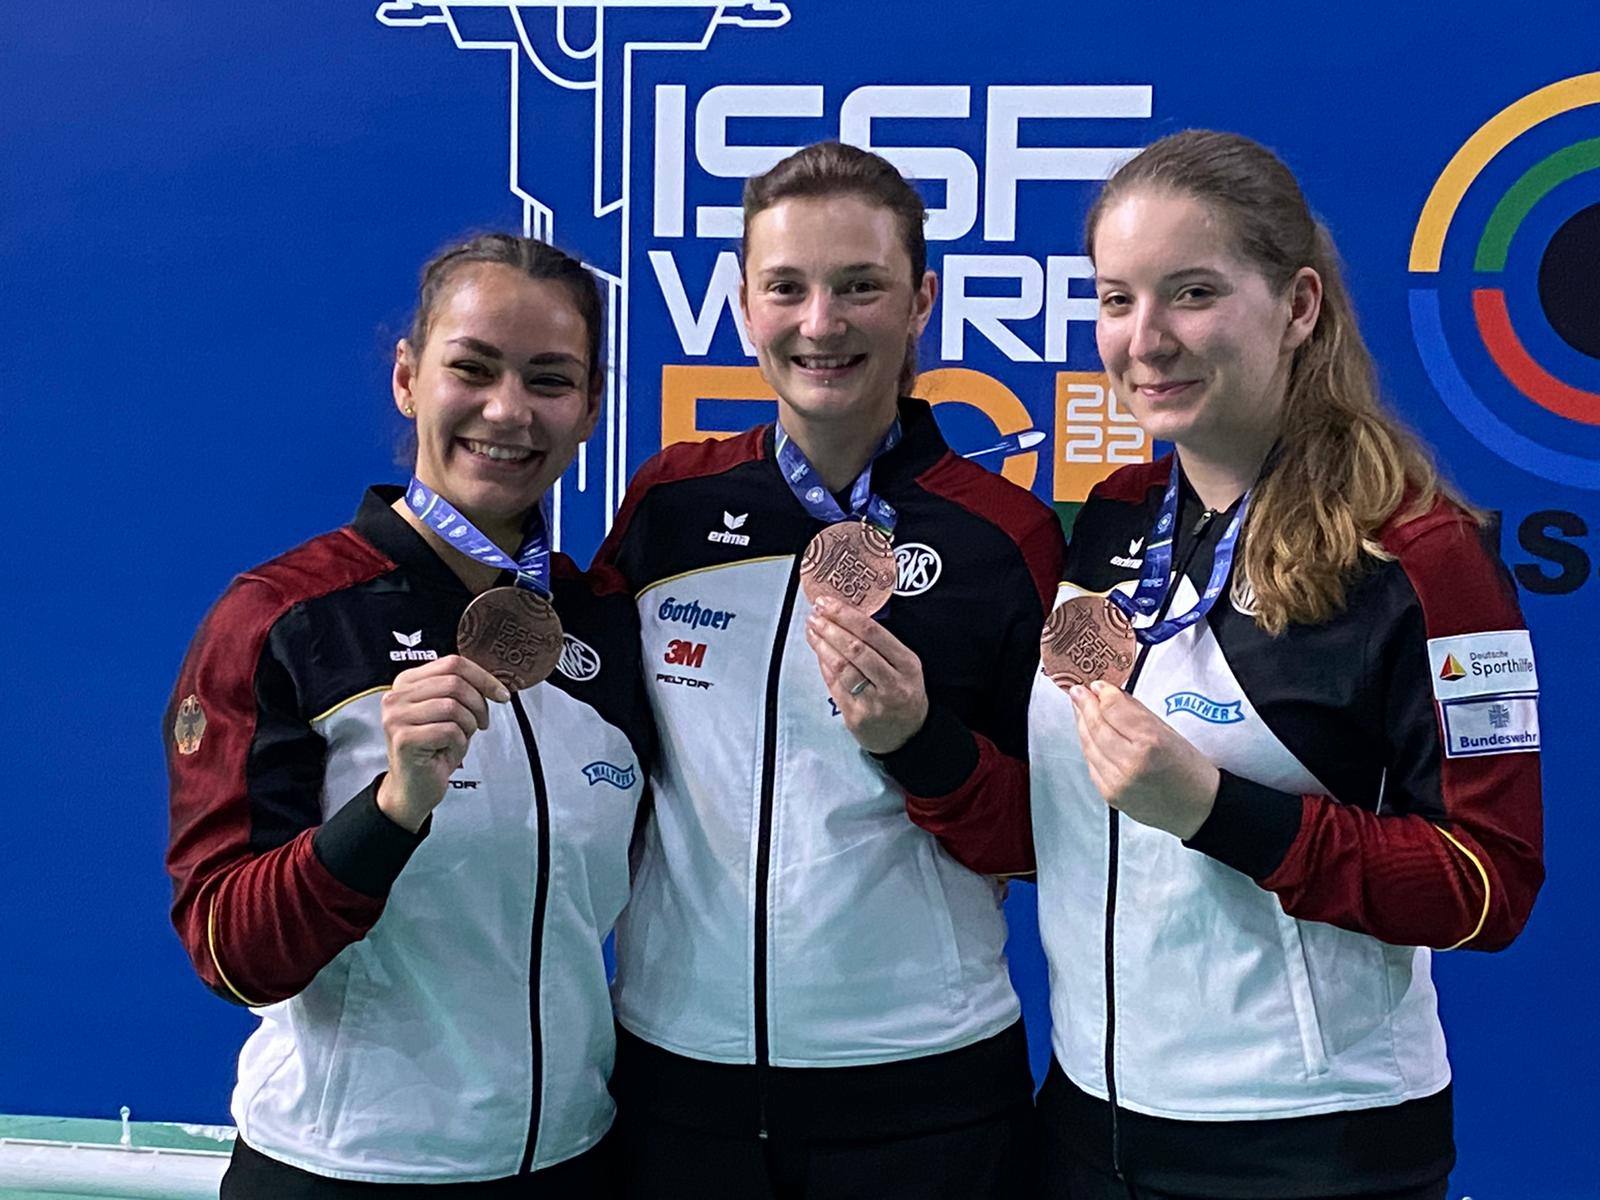 Es schicken Grüße aus Rio - Andrea Katharina Heckner, Sandra Reitz und Doreen Vennekamp mit den Bronzemedaillen.